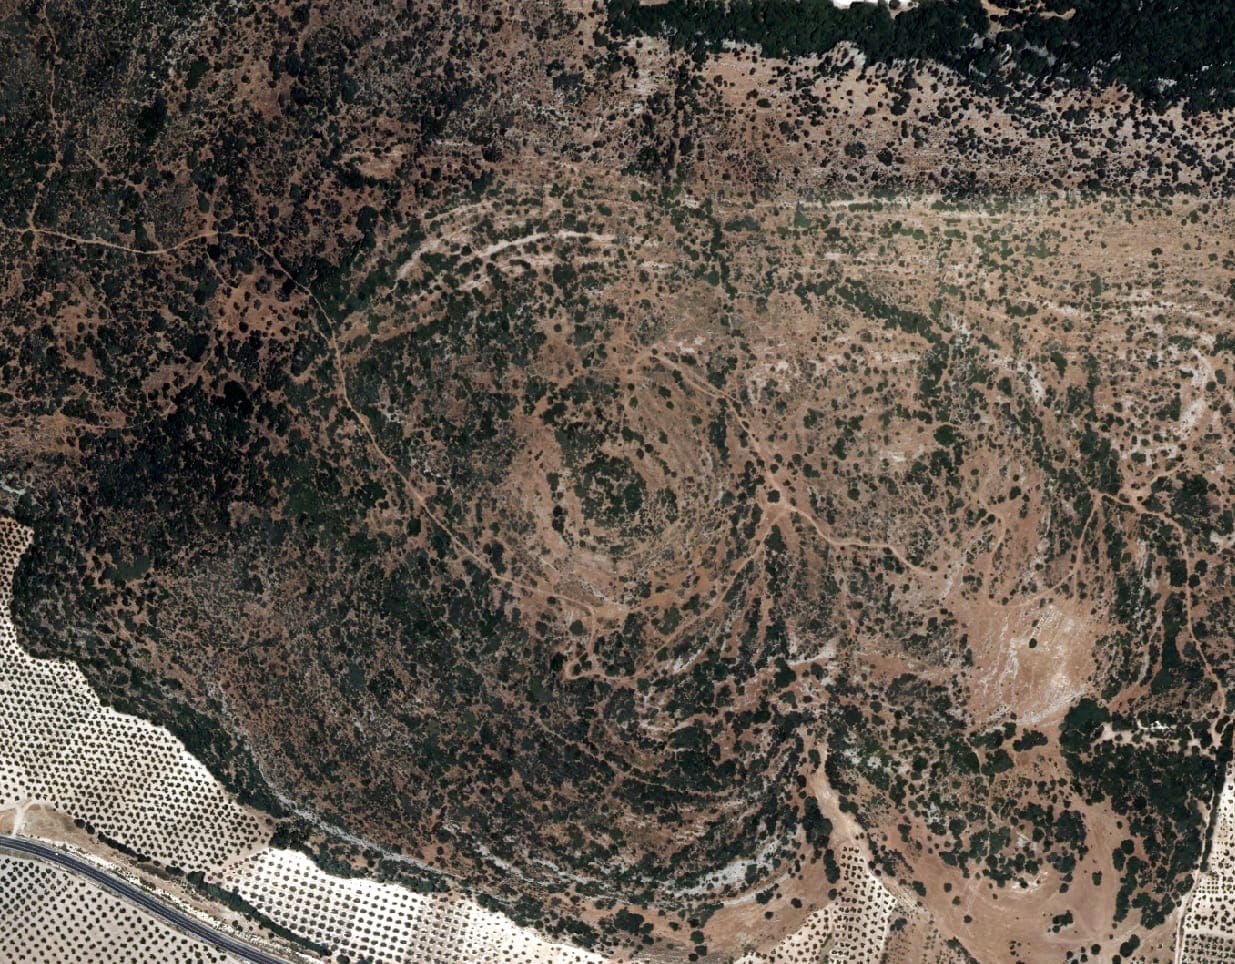 Imagen área de Ortofoto de un Yacimiento Arqueológico en Colomera en el que se ven 3 círculos concéntricos cubiertos por vegetación